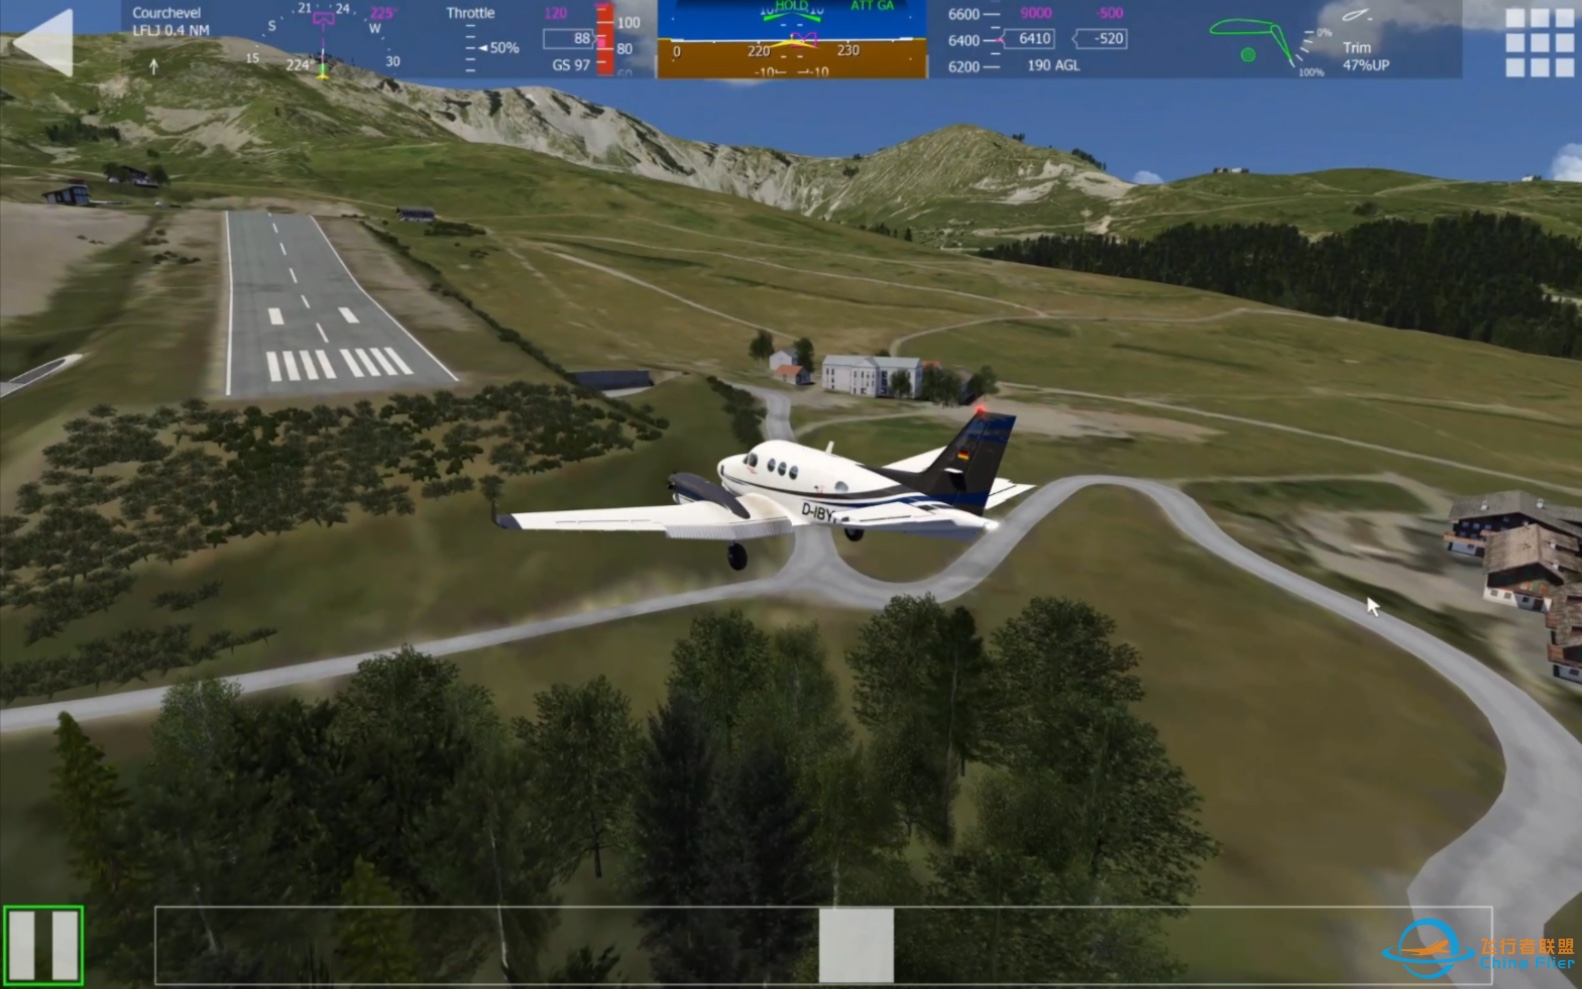 在经历无数次的尝试后终于成功在Aerofly驾驶King Air空中国王降落世界十大危险机场之一的机场—法国高雪维尔机场-5309 